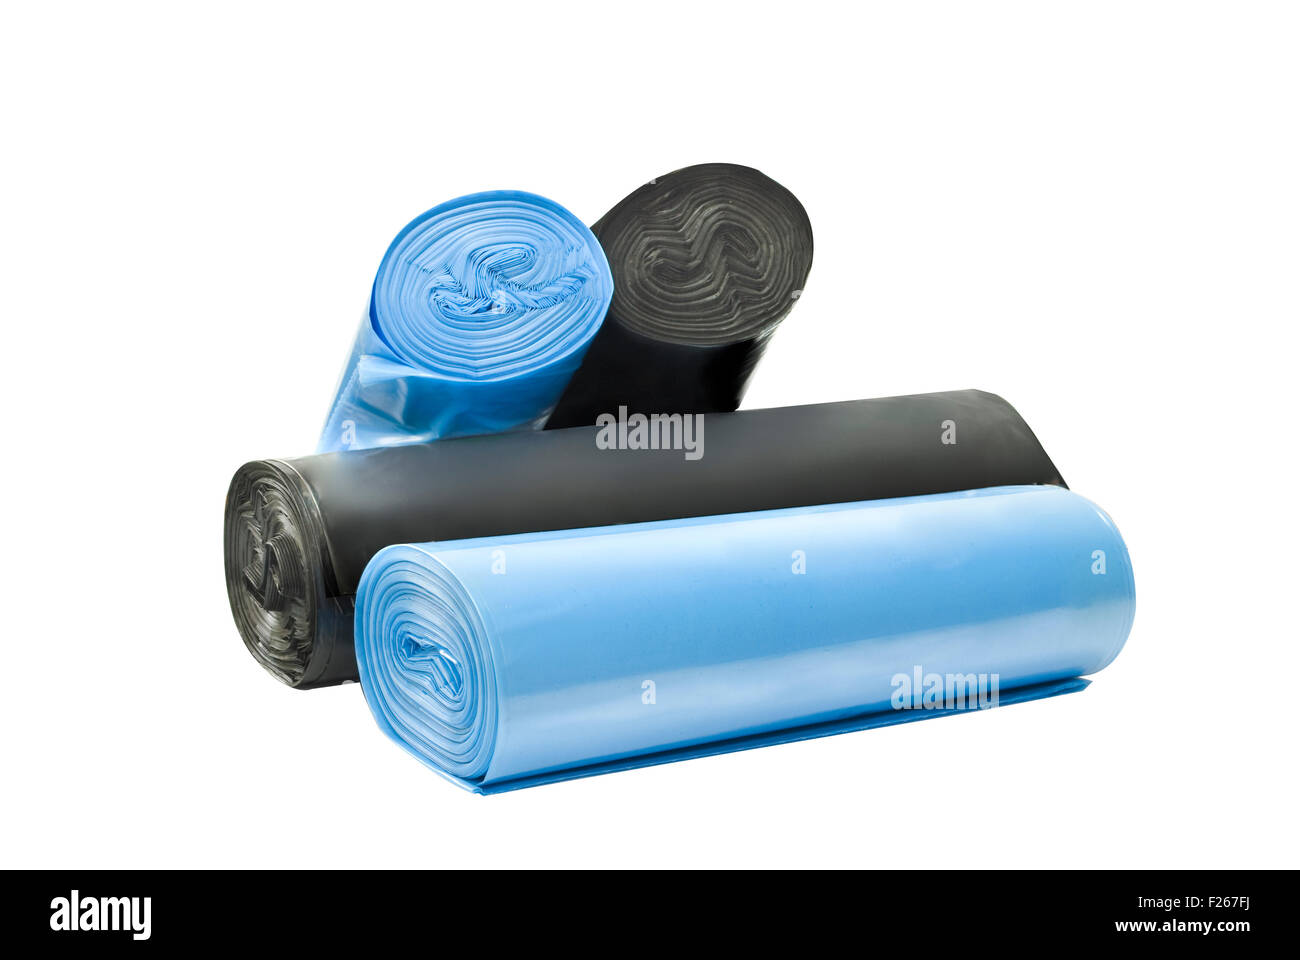 Degradabili in plastica blu e nero sacchi della spazzatura Foto Stock